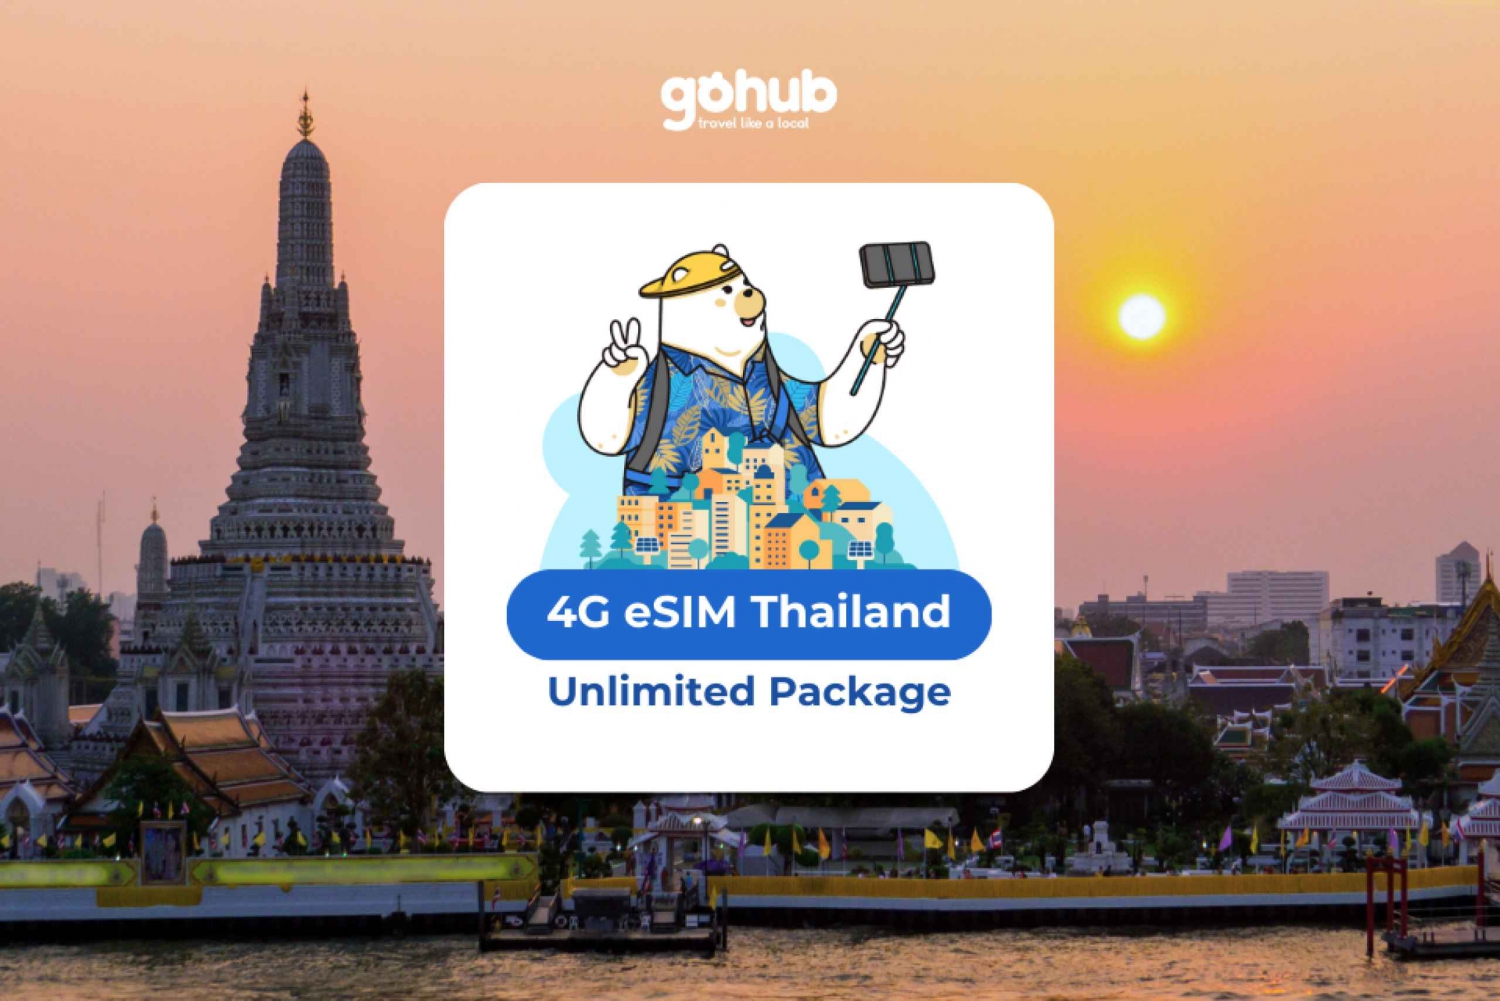 Tailândia eSIM com dados ilimitados por 10 dias: Venda relâmpago